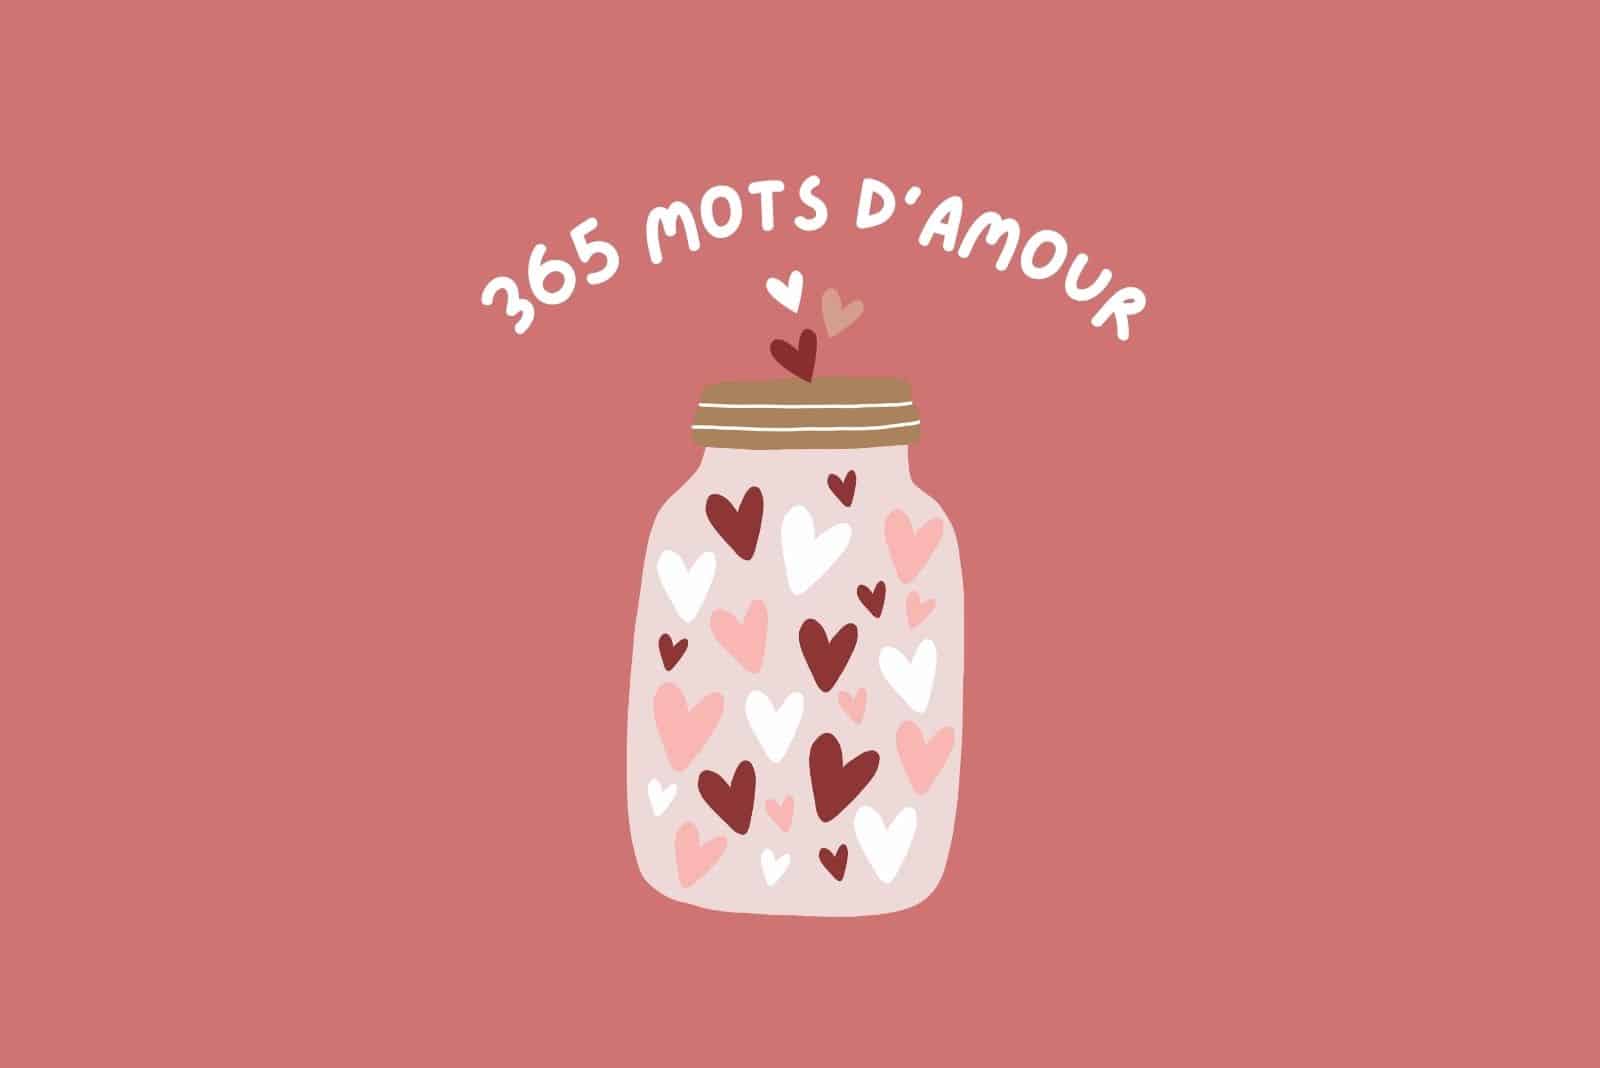 La Liste de 365 Mots D’amour